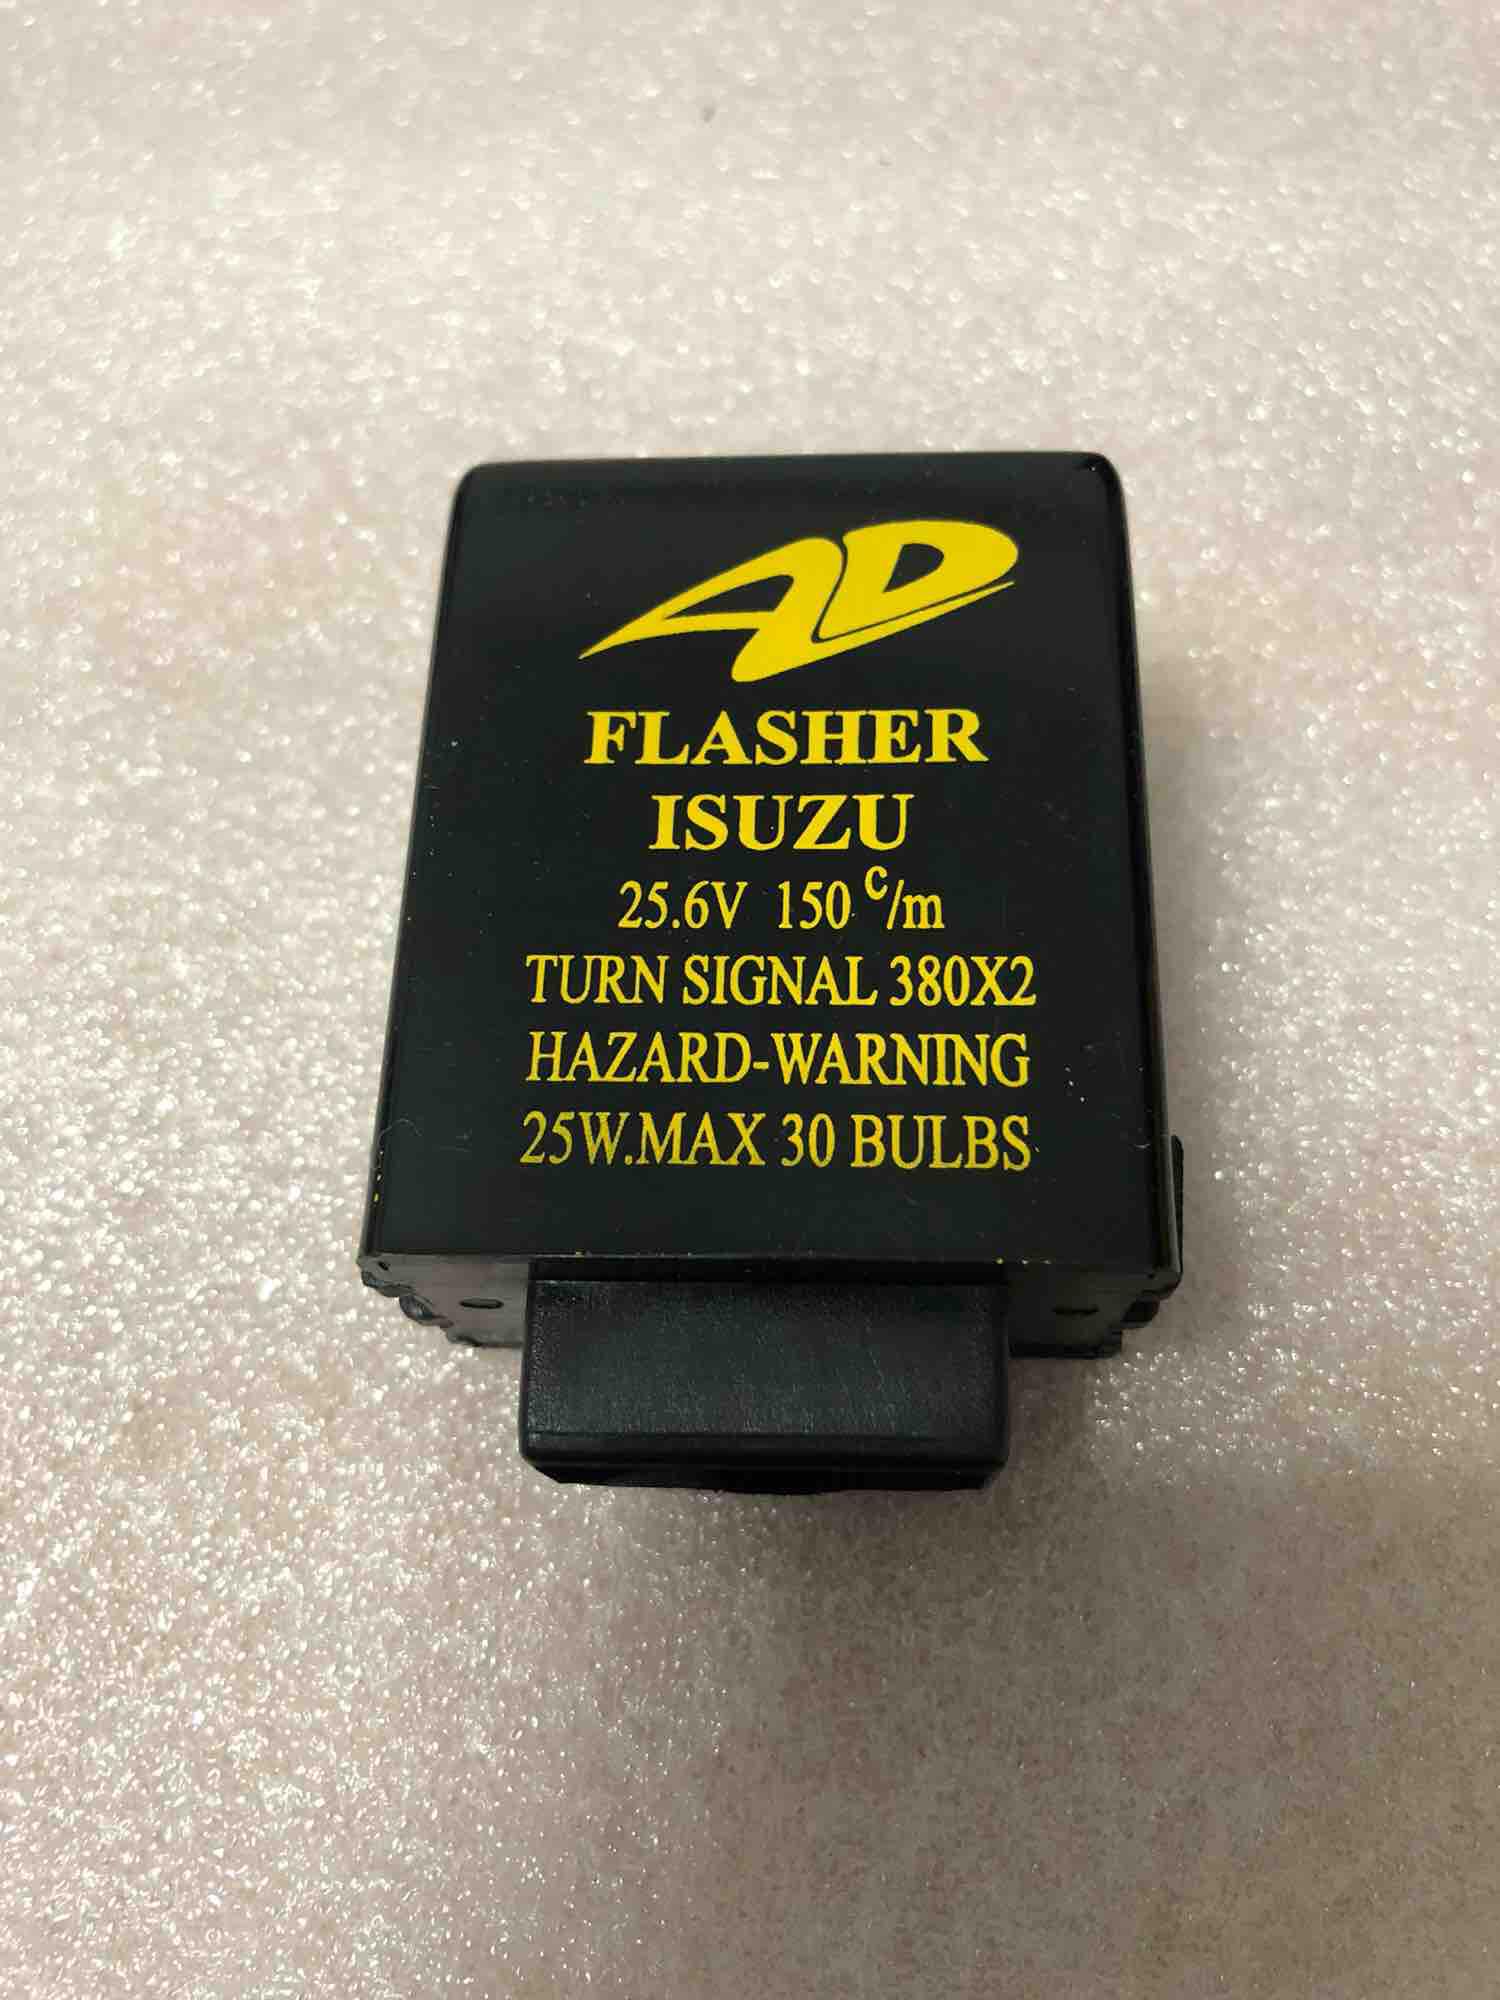 Flasher ไฟเลี้ยว (รีเลย์ไฟเลี้ยว / แฟลชเชอร์) Isuzu DECA แบบปรับให้กระพริบเร็วได้